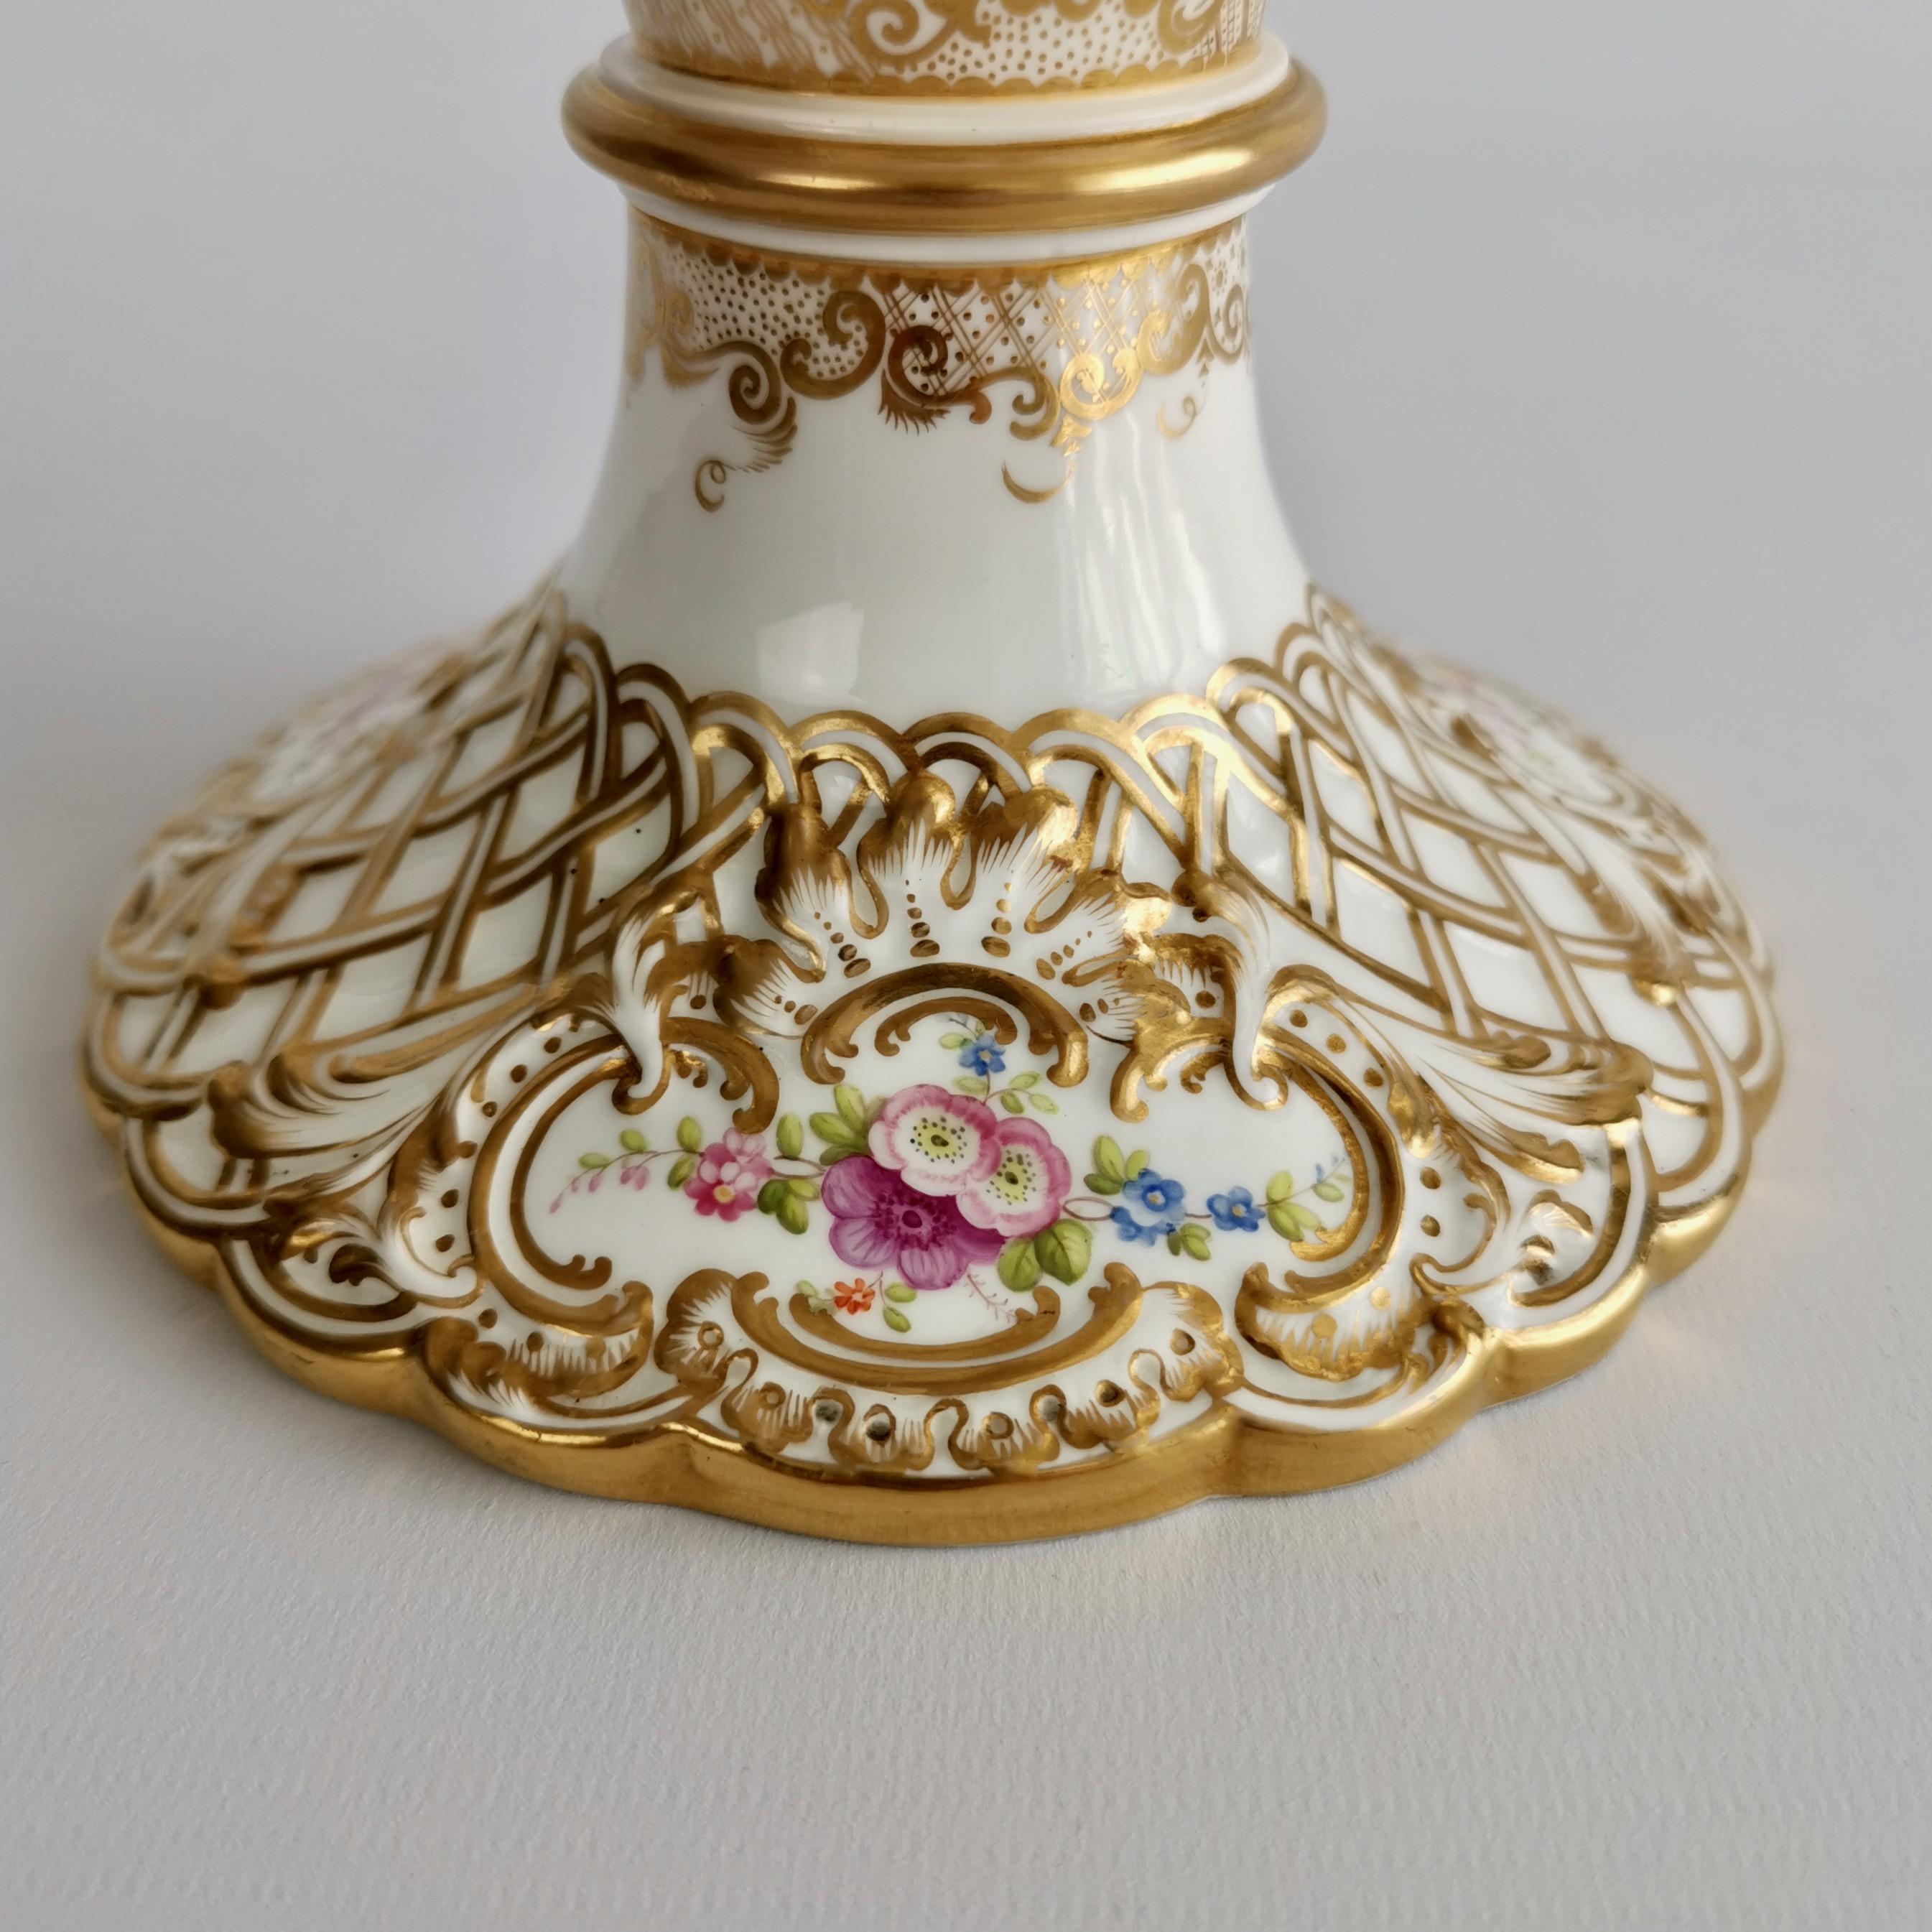 Minton Porcelain Dessert Service, White, Flowers J. Bancroft, Victorian, 1841 9